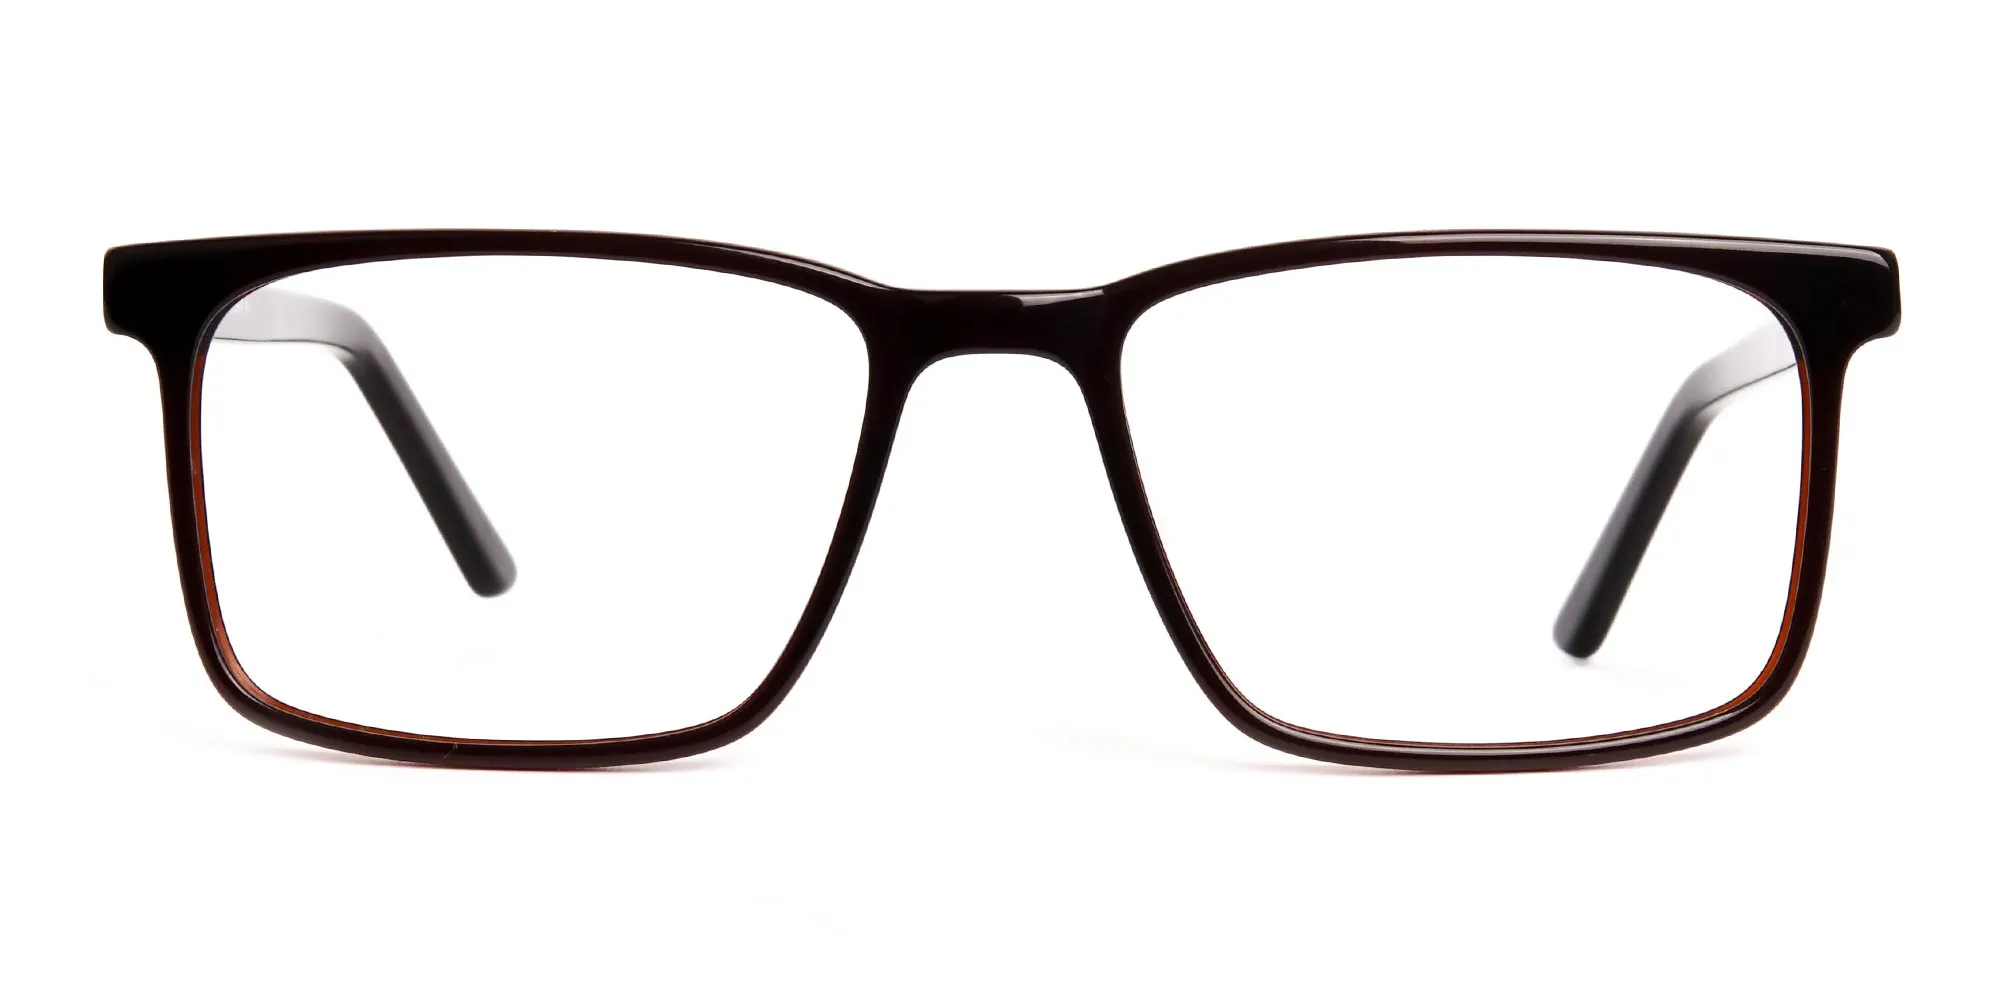 designer dark brown rectangular glasses frames